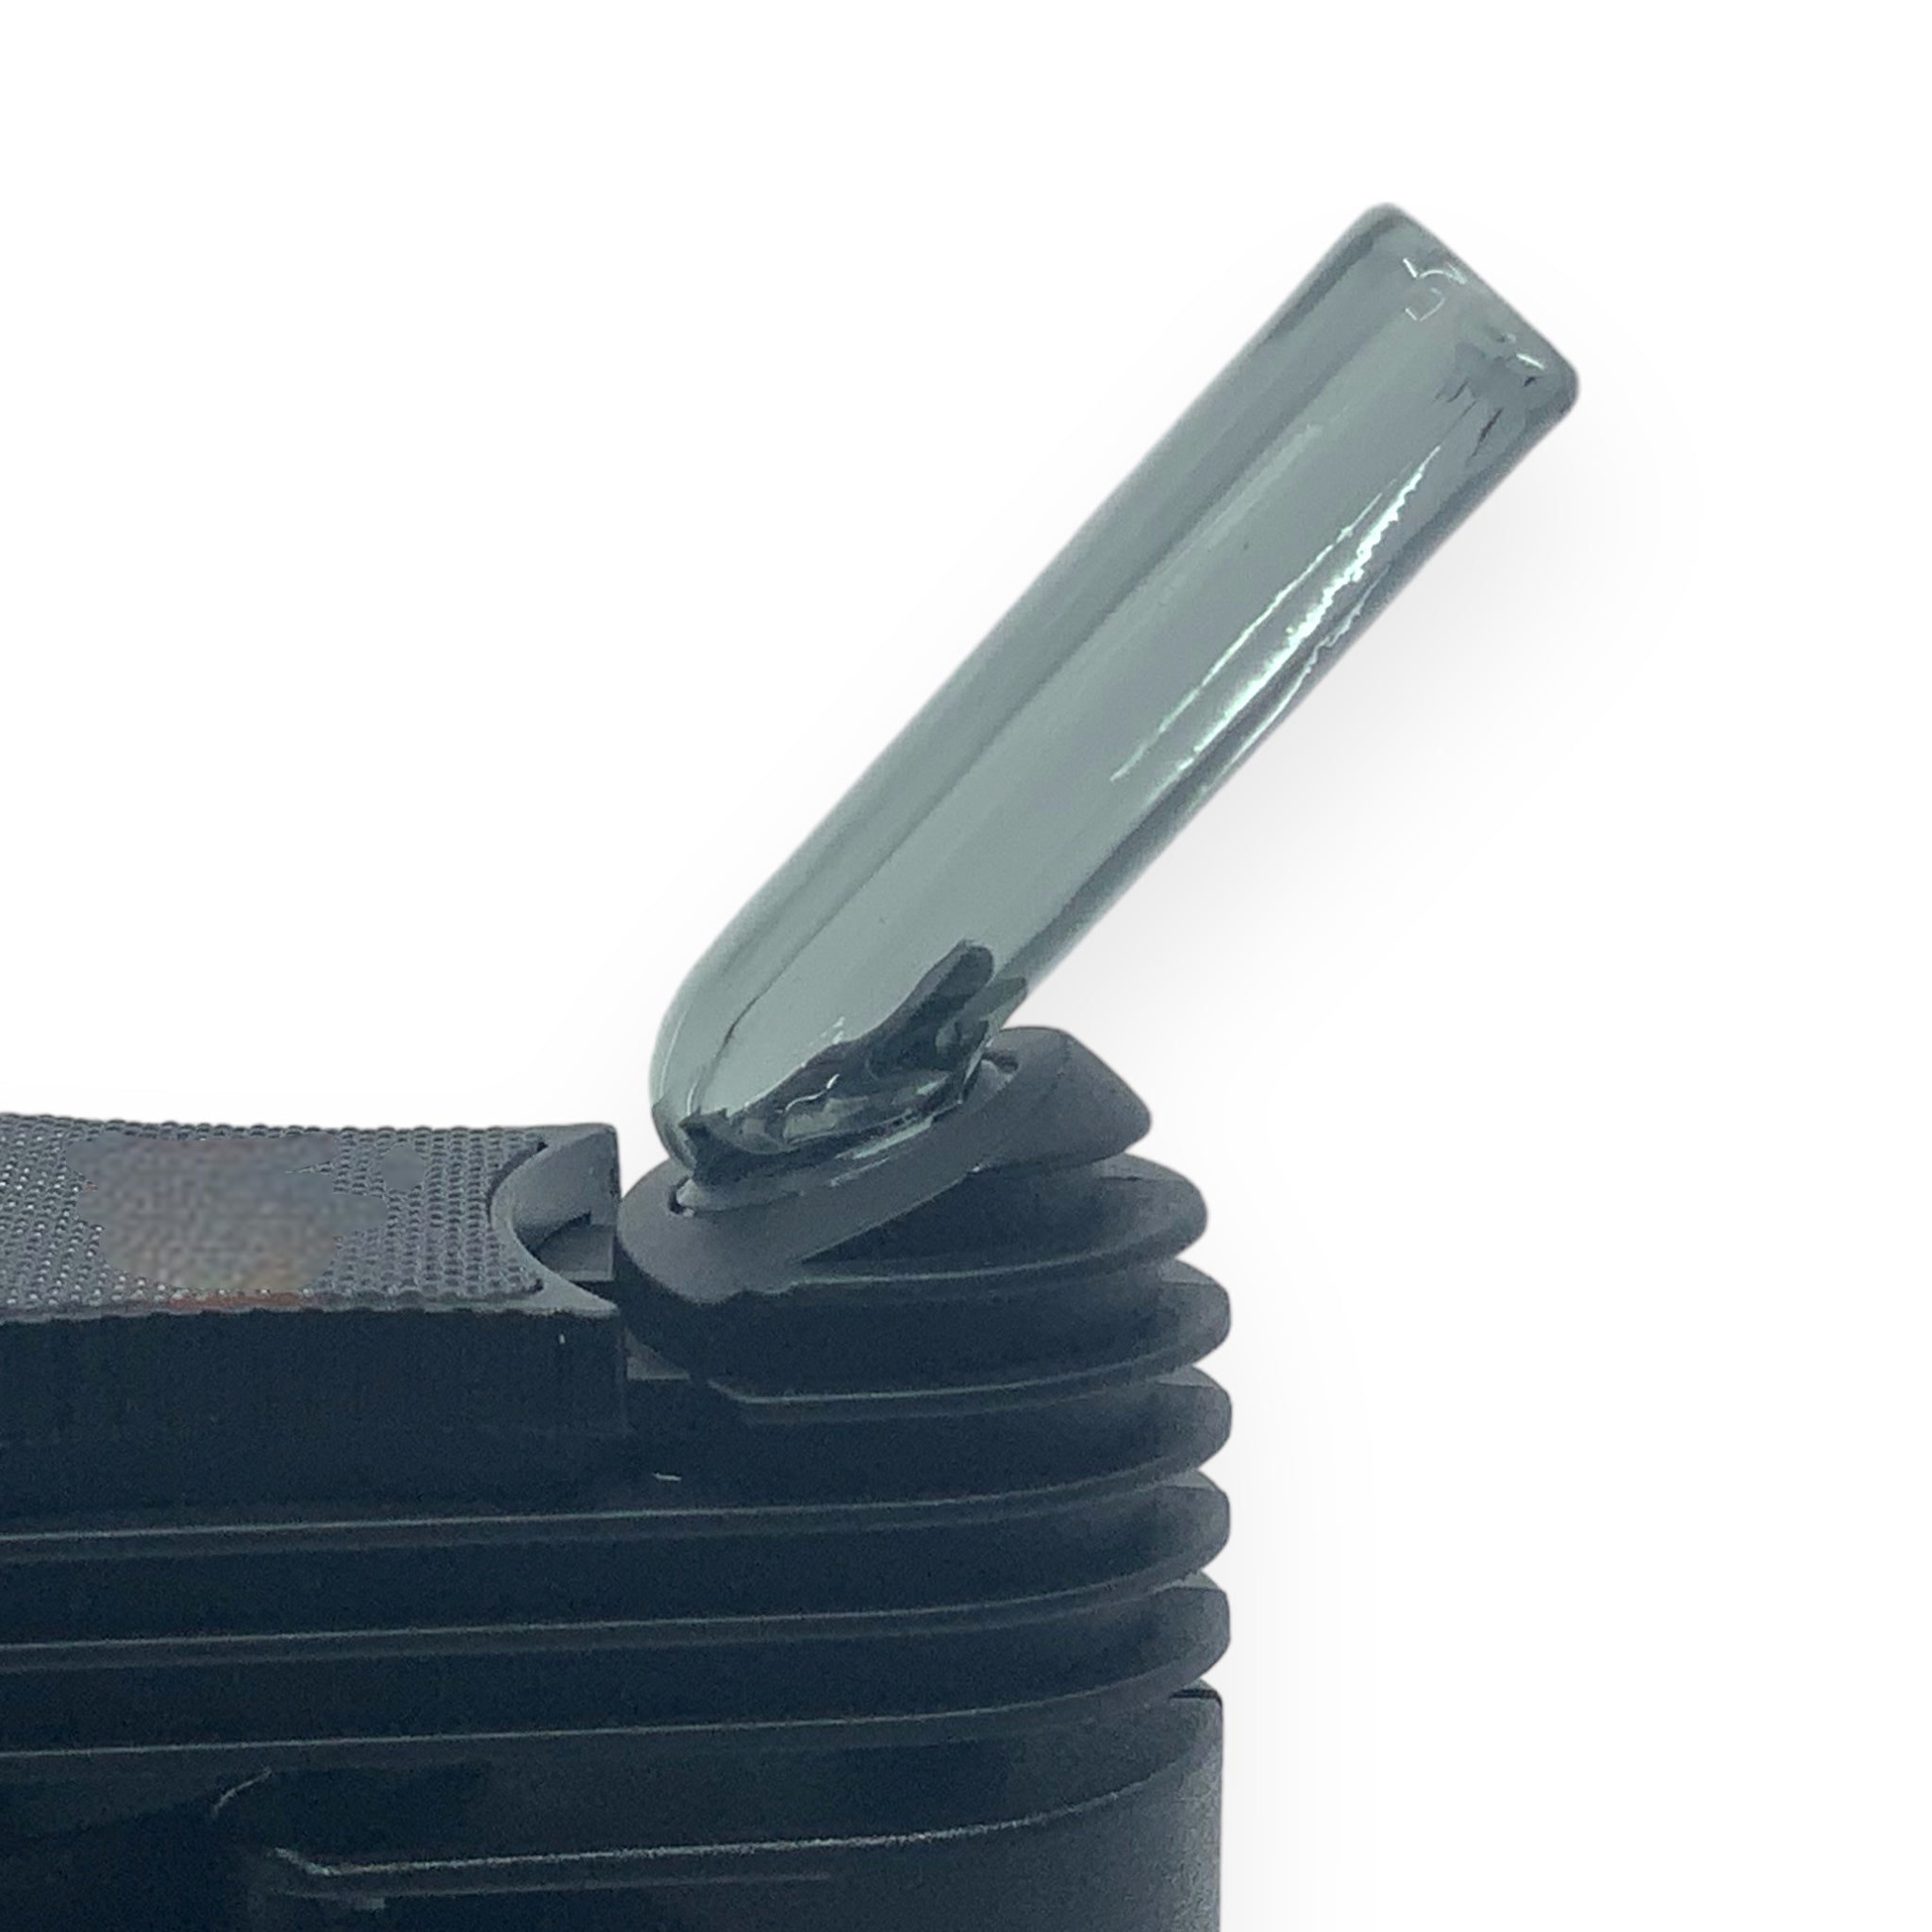 Vapotools Glasmundstück schwarz passend für Mighty und Crafty ausgesetzt seitlich